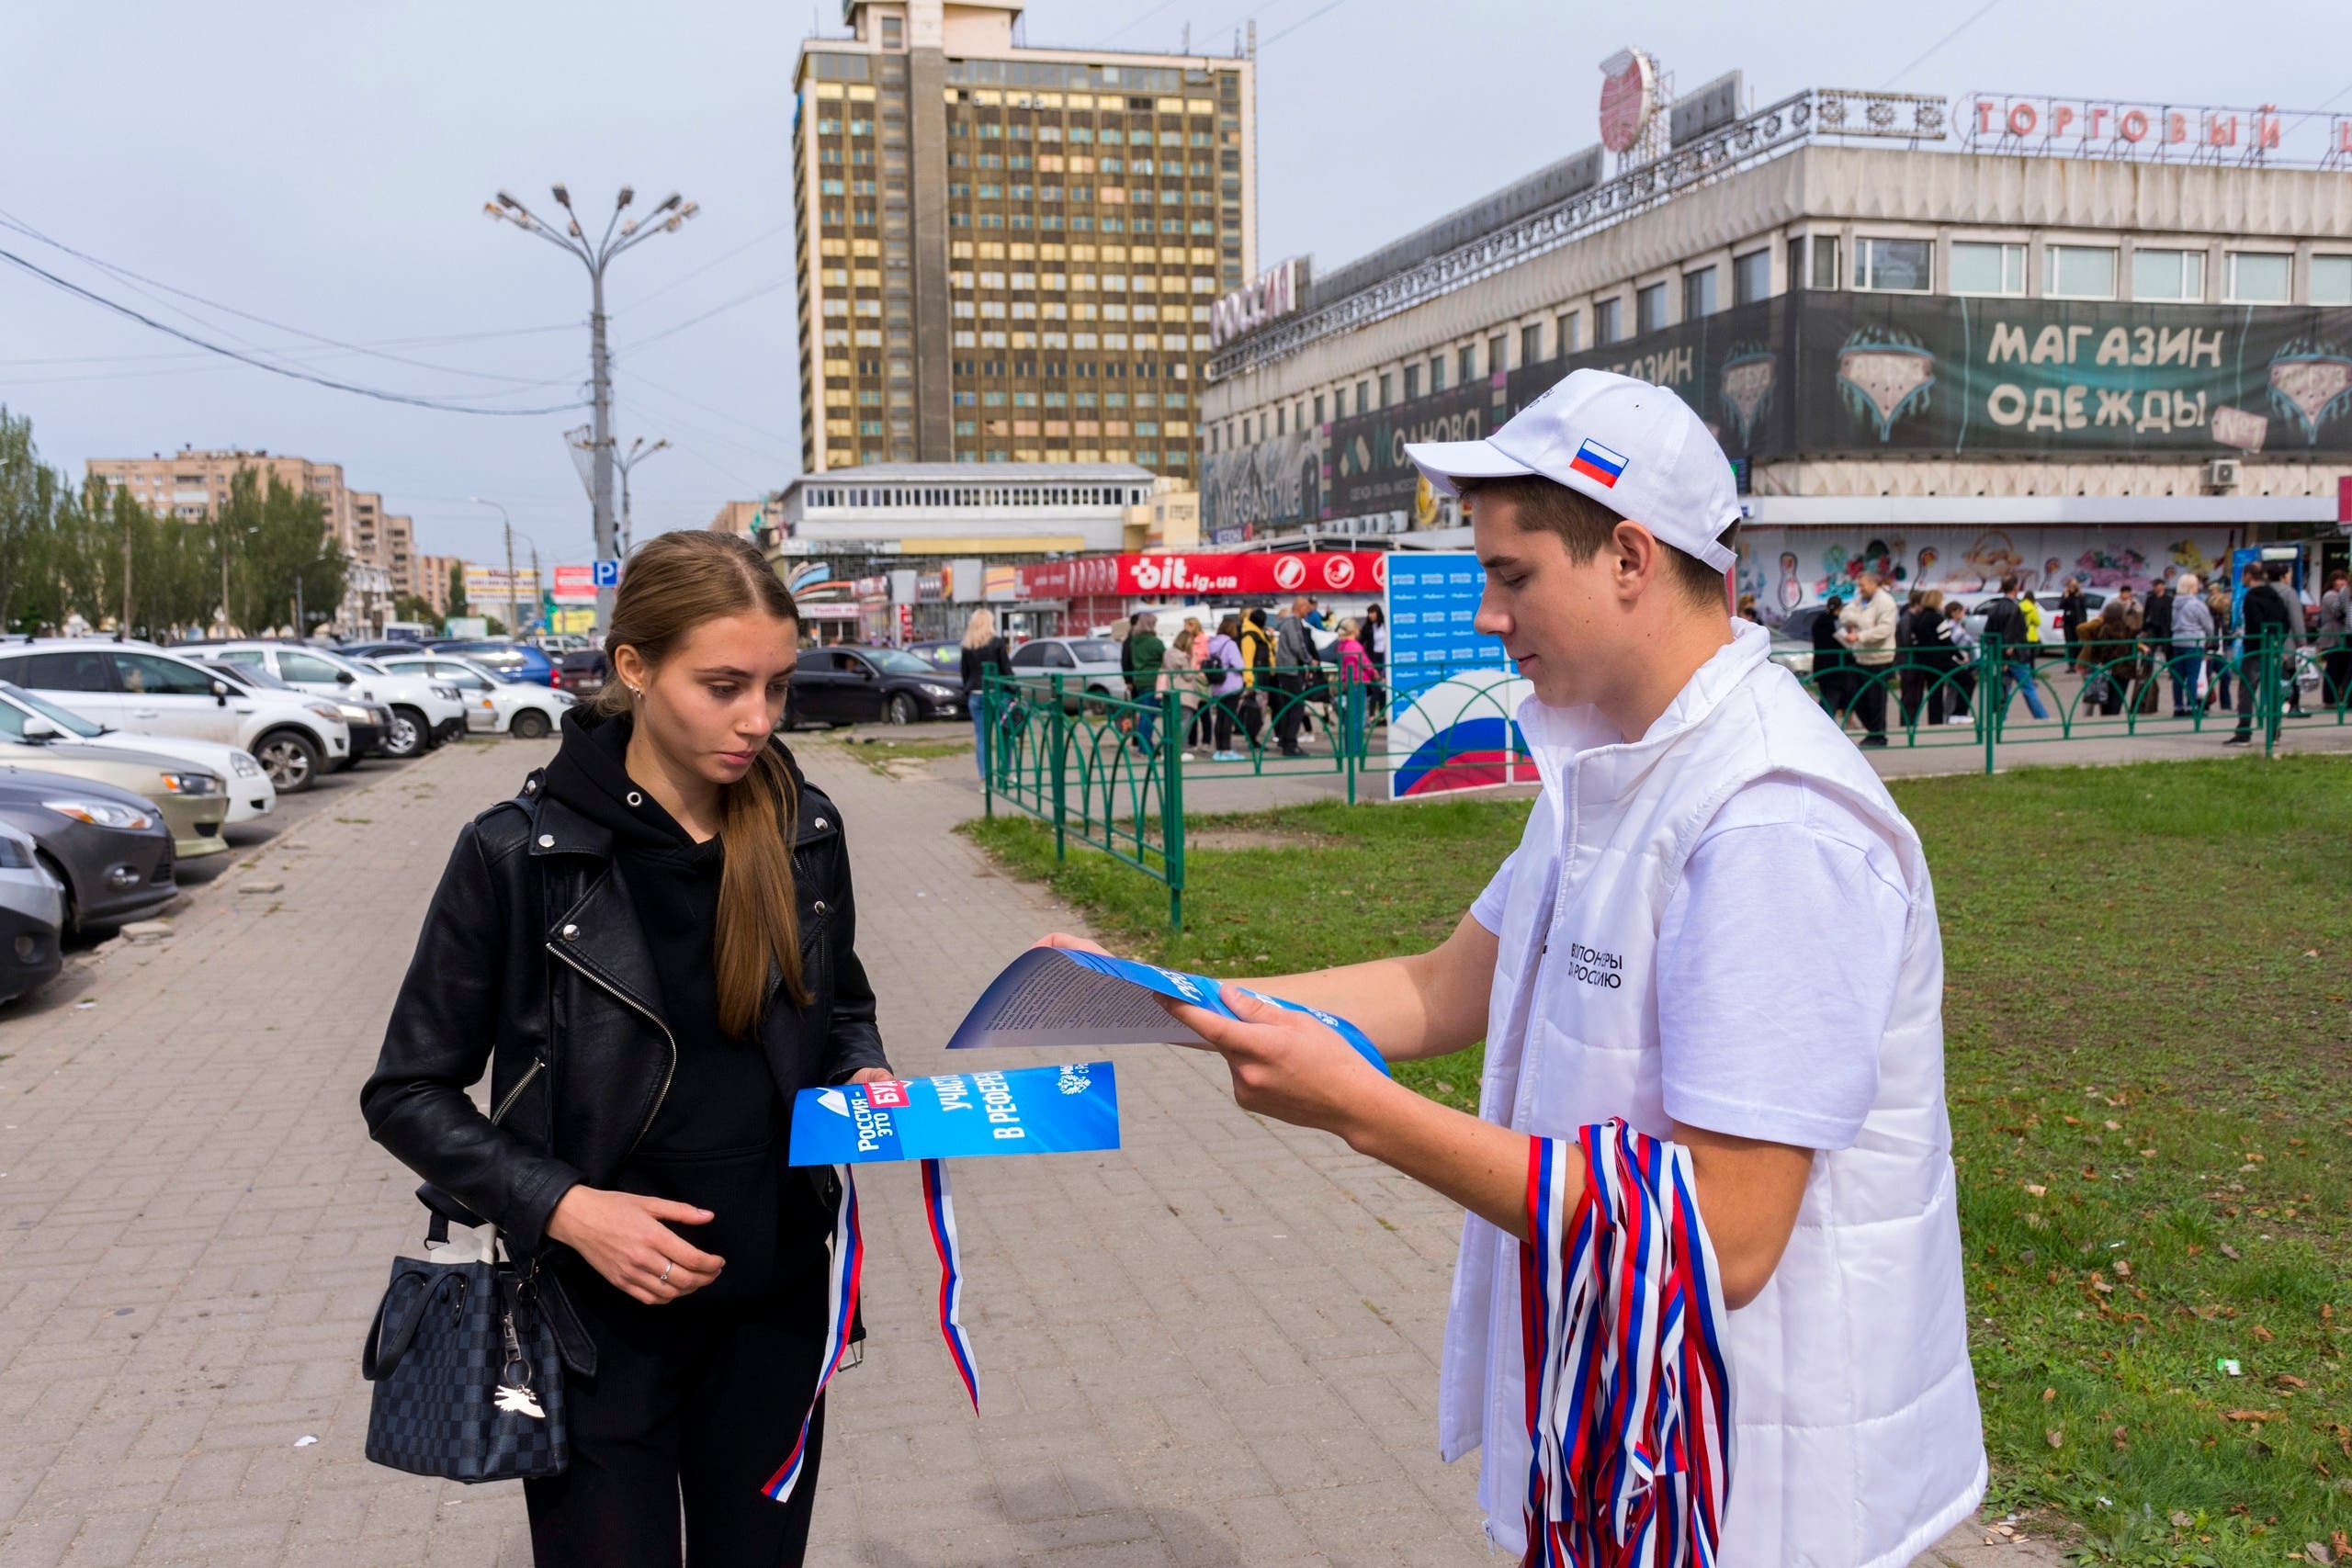 توزيع مناشير قبل الاستفتاء في لوهانسك